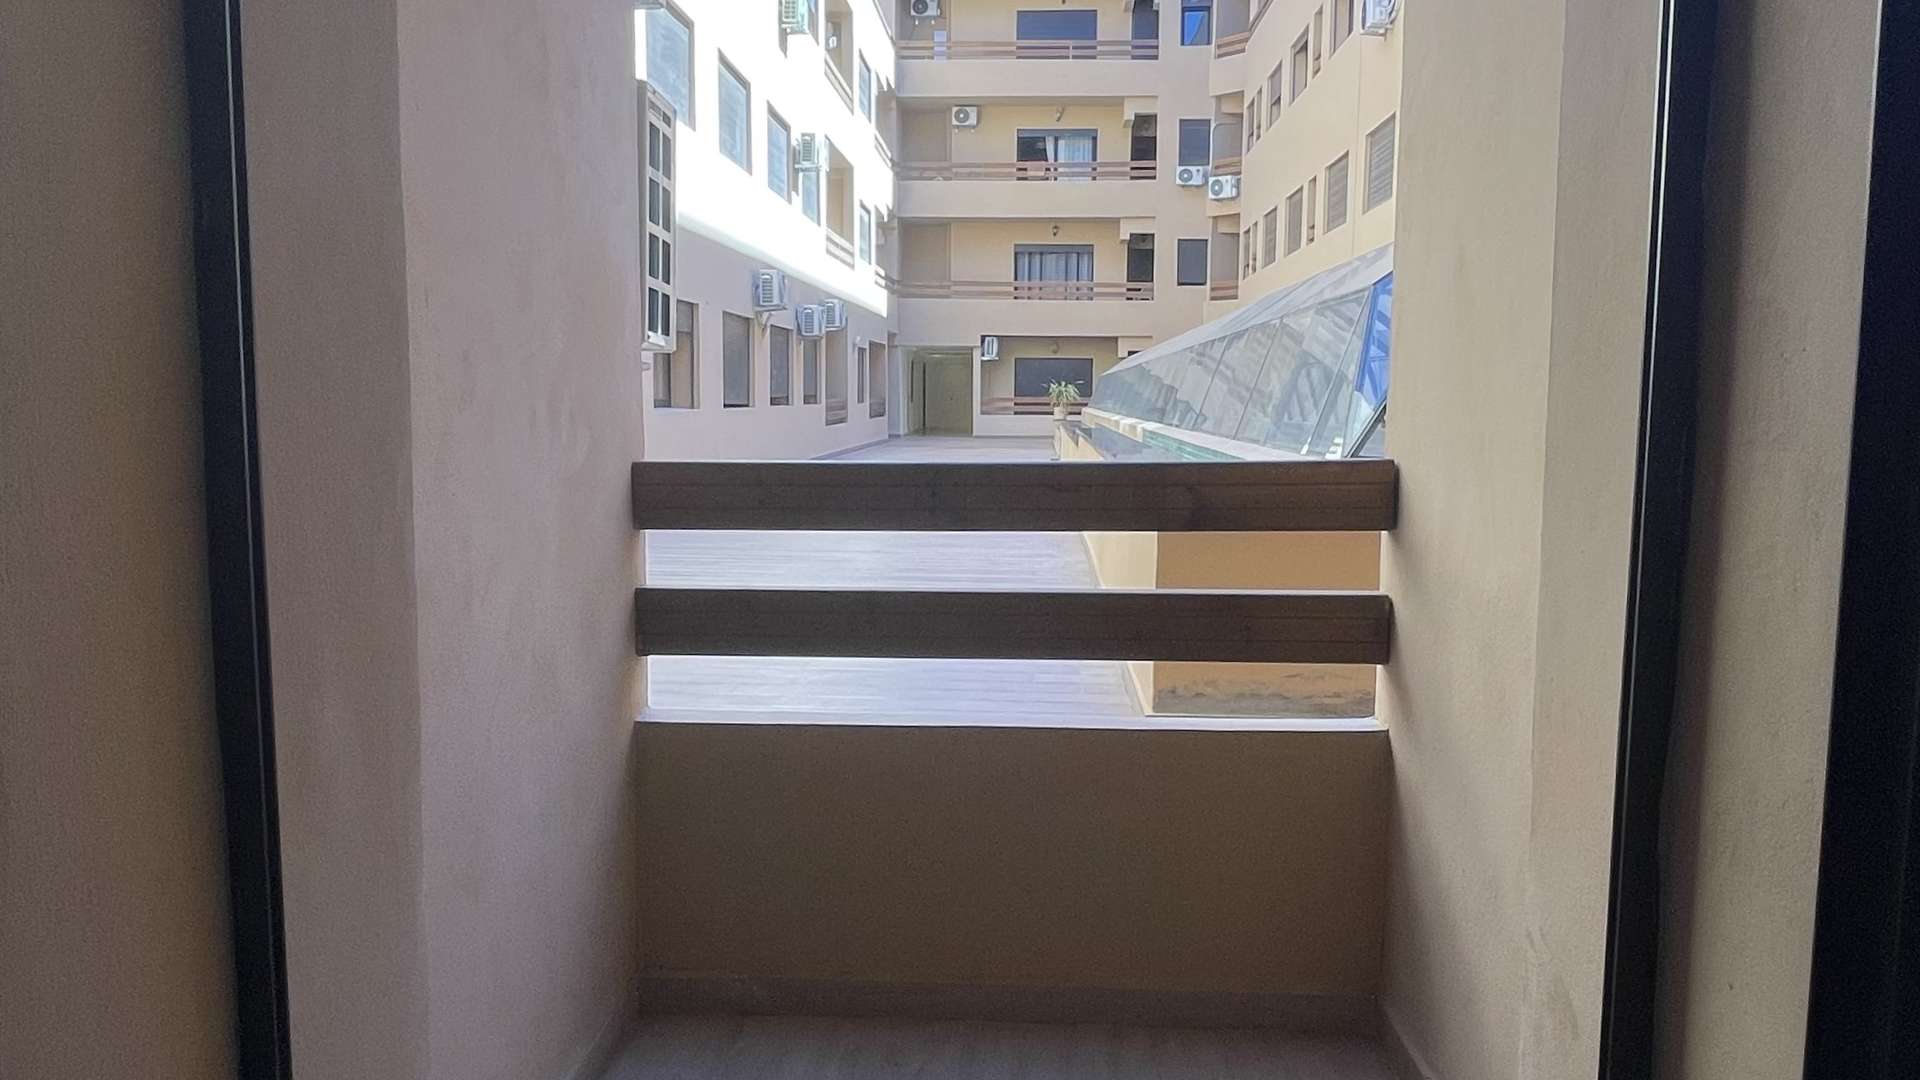 Location longue durée ,Appartement,Appartement Neuf T2 meublé à louer près du Theatre Royal à Marrakech,Marrakech,Av. Hassan II